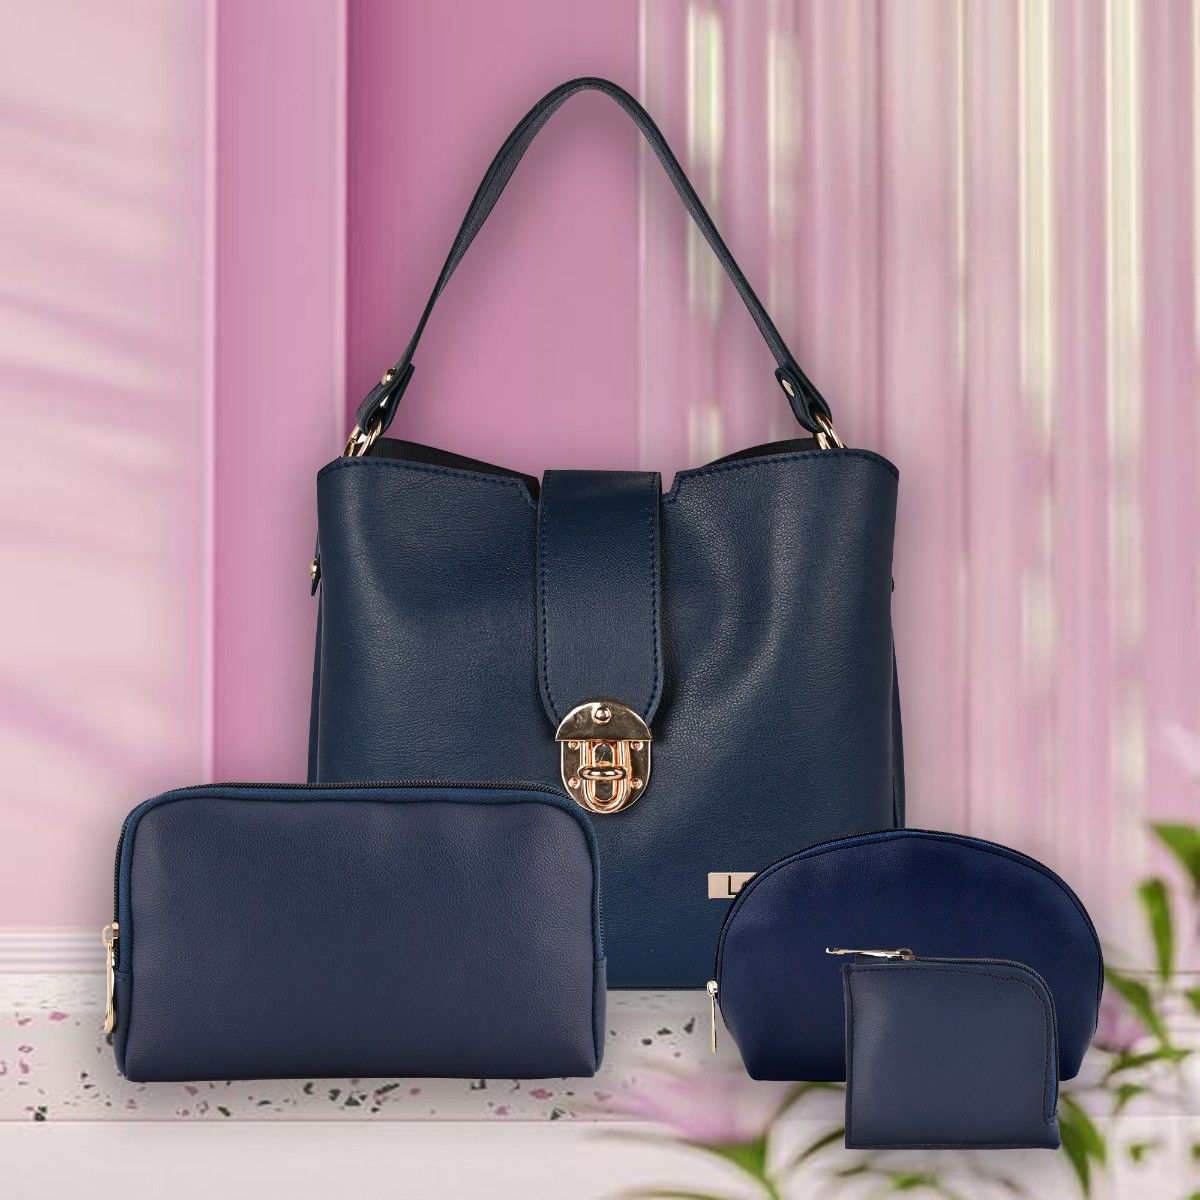 Buy Elegant Women Pink, Multicolor Hand-held Bag PINK Online @ Best Price  in India | Flipkart.com